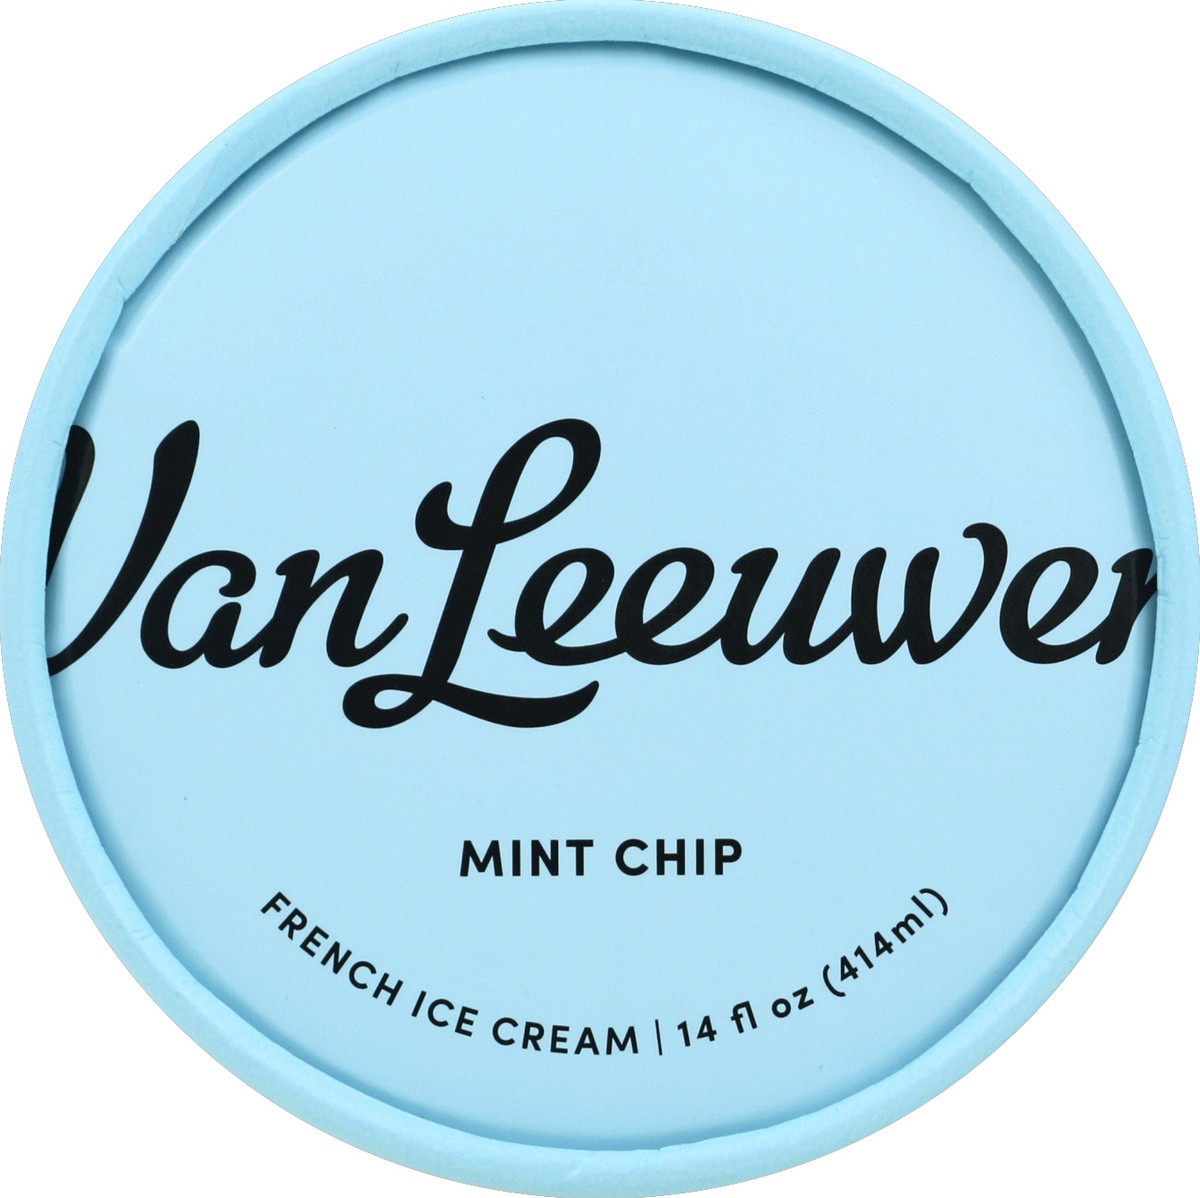 slide 2 of 3, Van Leeuwen Ice Cream 14 oz, 14 oz